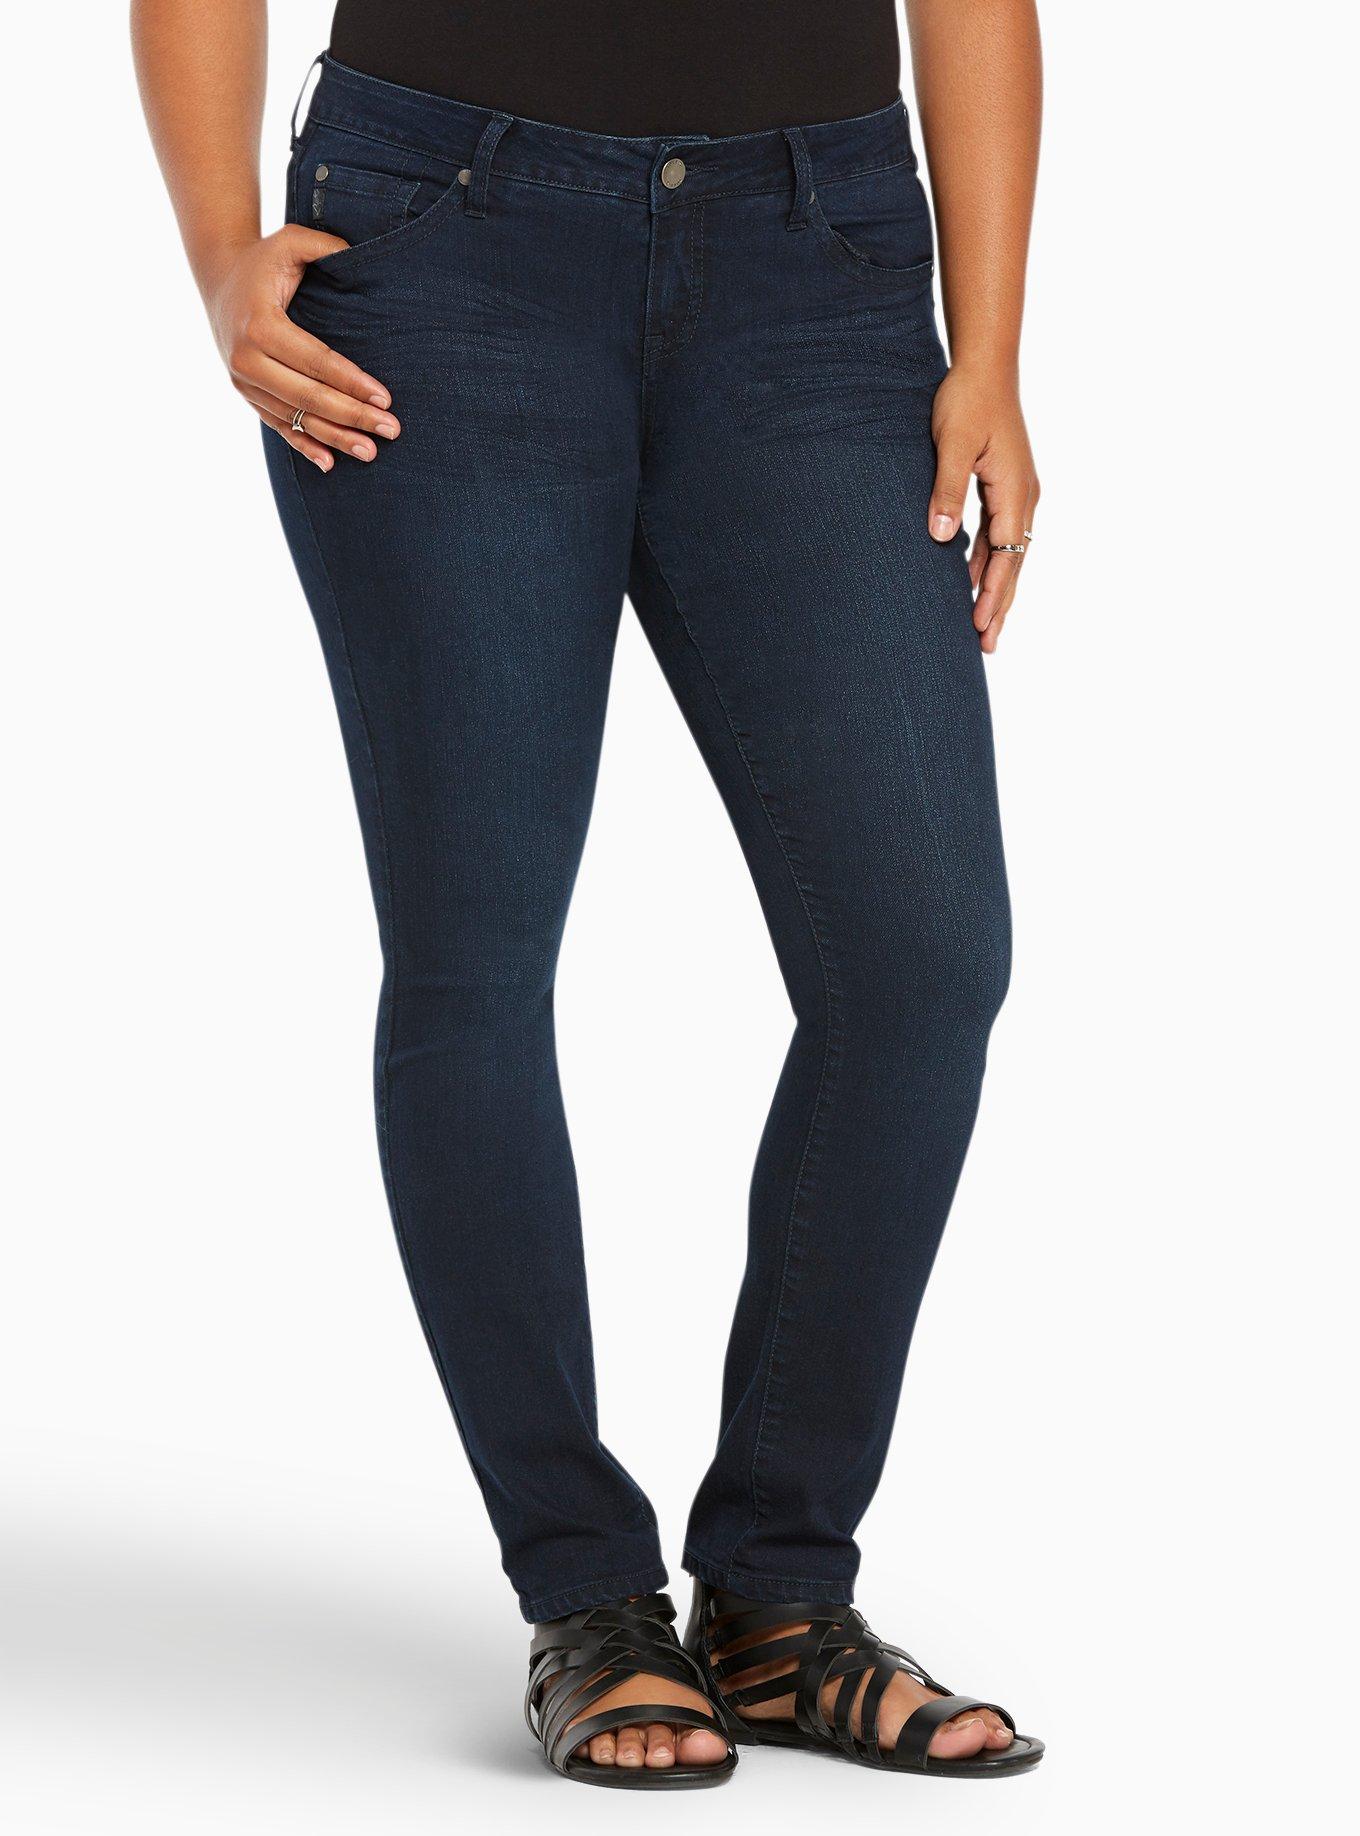 Plus Size - Torrid Skinny Jeans - Dark Wash - Torrid